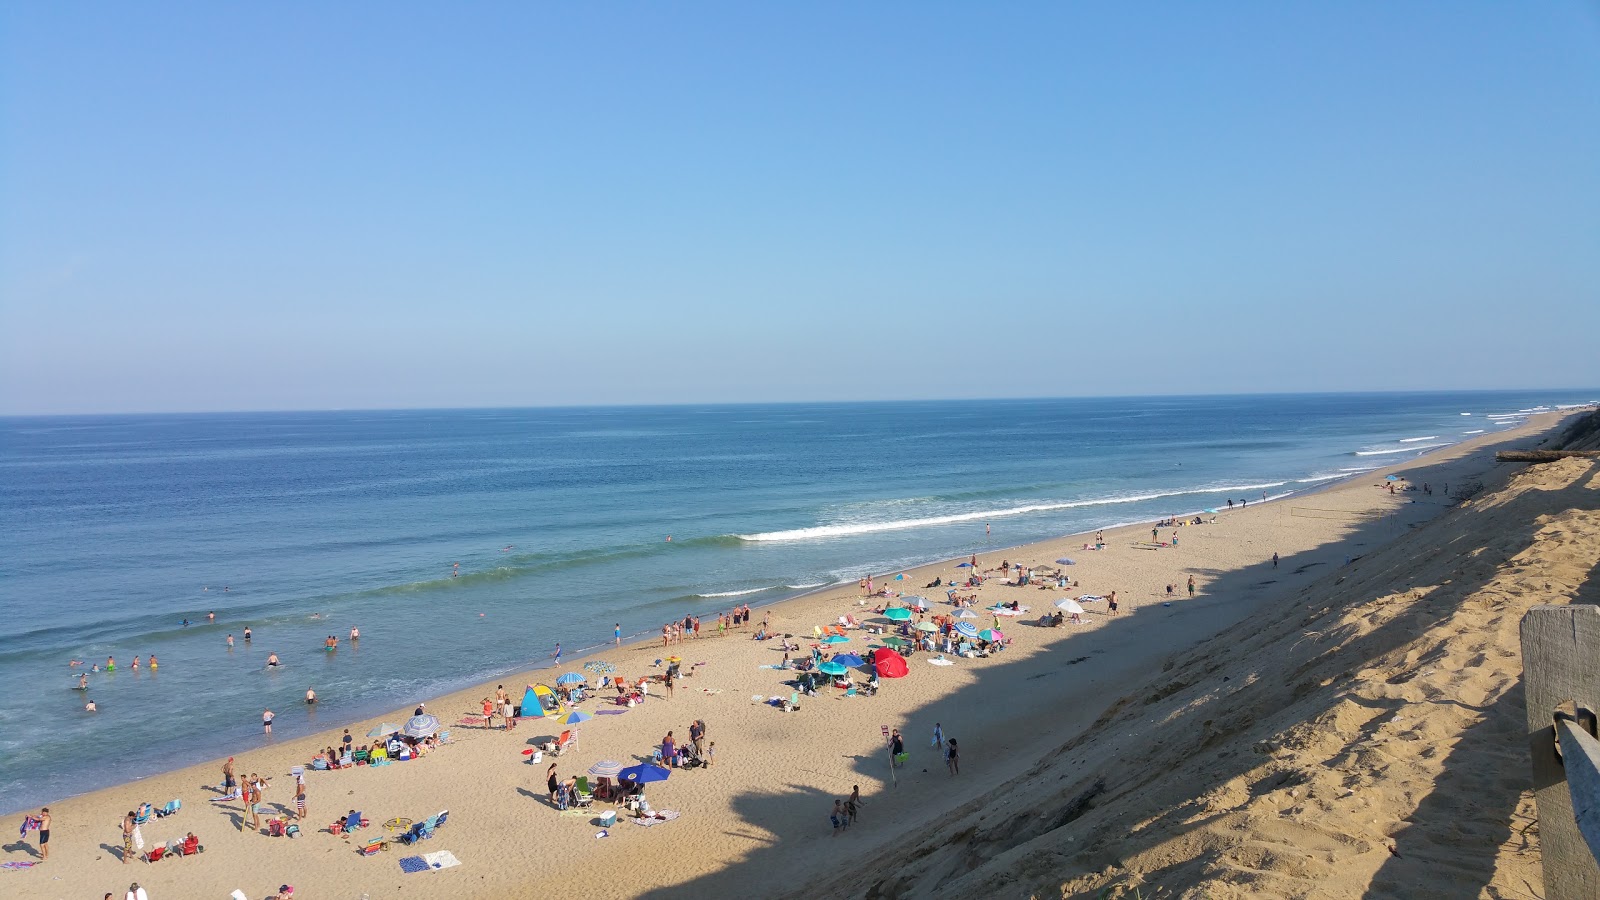 Zdjęcie Cahoon Hollow beach - popularne miejsce wśród znawców relaksu